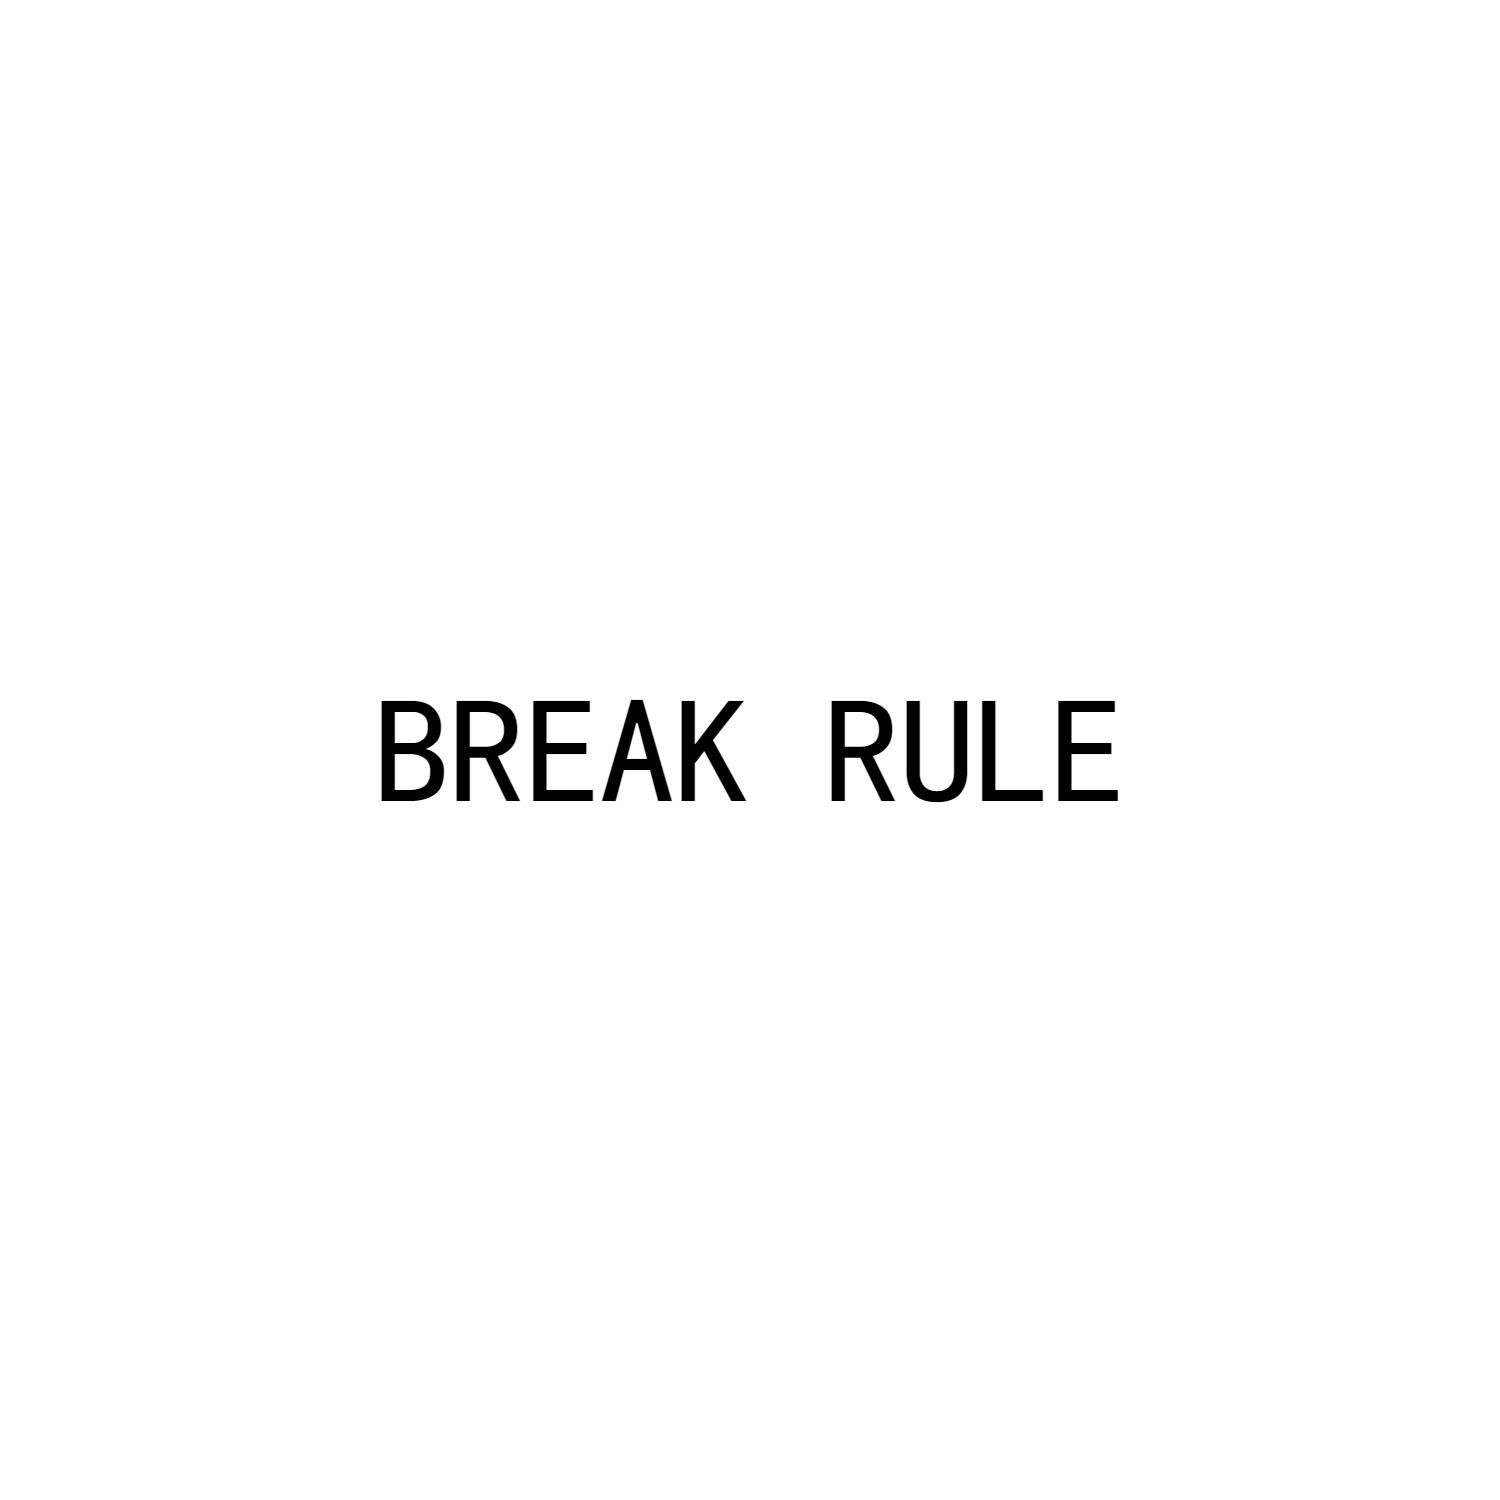 BREAK RULE